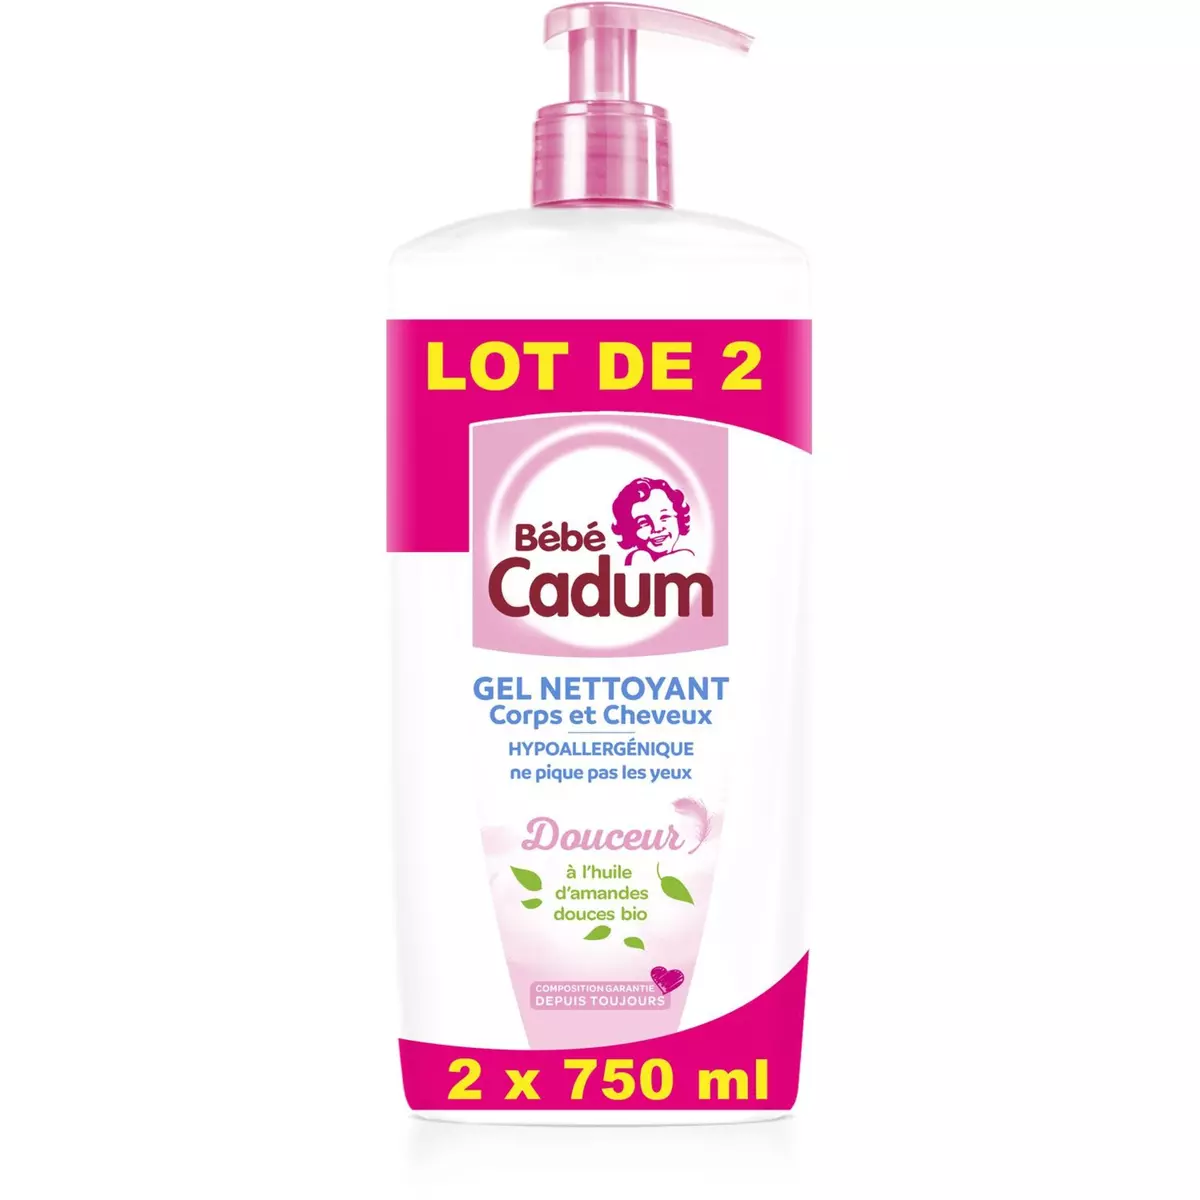 BEBE CADUM Gel nettoyant corps et cheveux pour bébé huile d'amandes douces bio 2x750ml